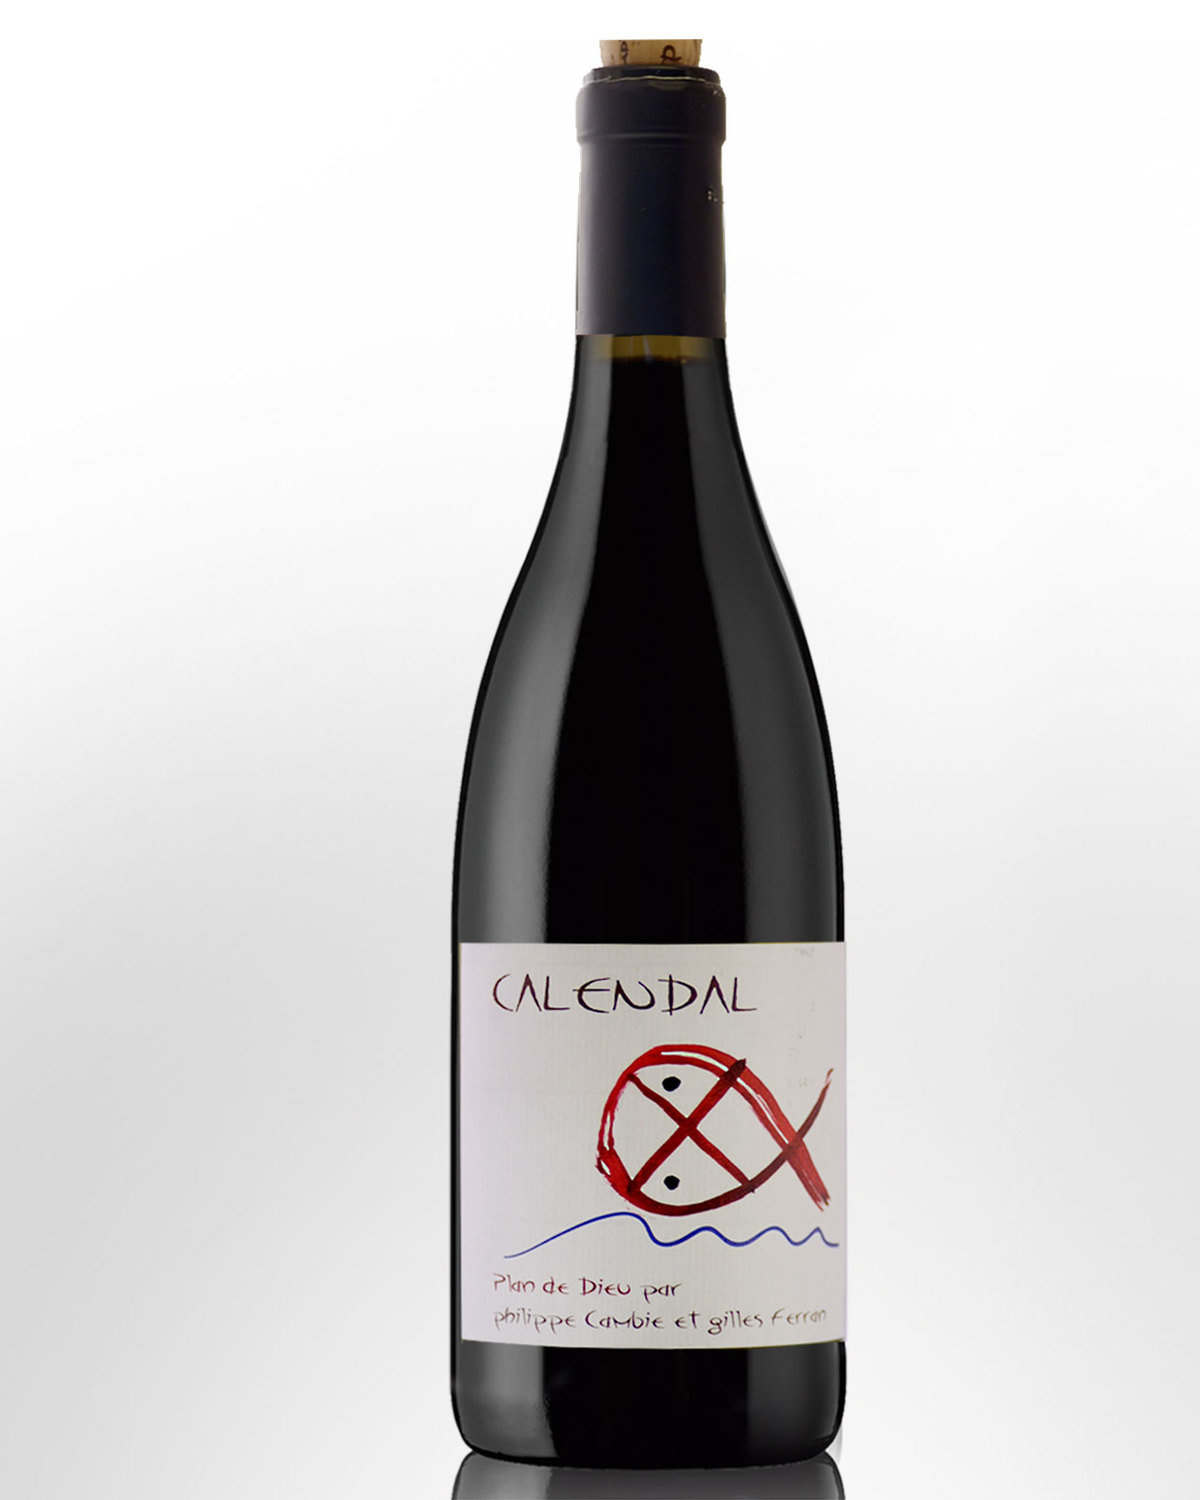 2012 Domaine Calendal Plan de Dieu Cotes du Rhone Villages Nicks Wine